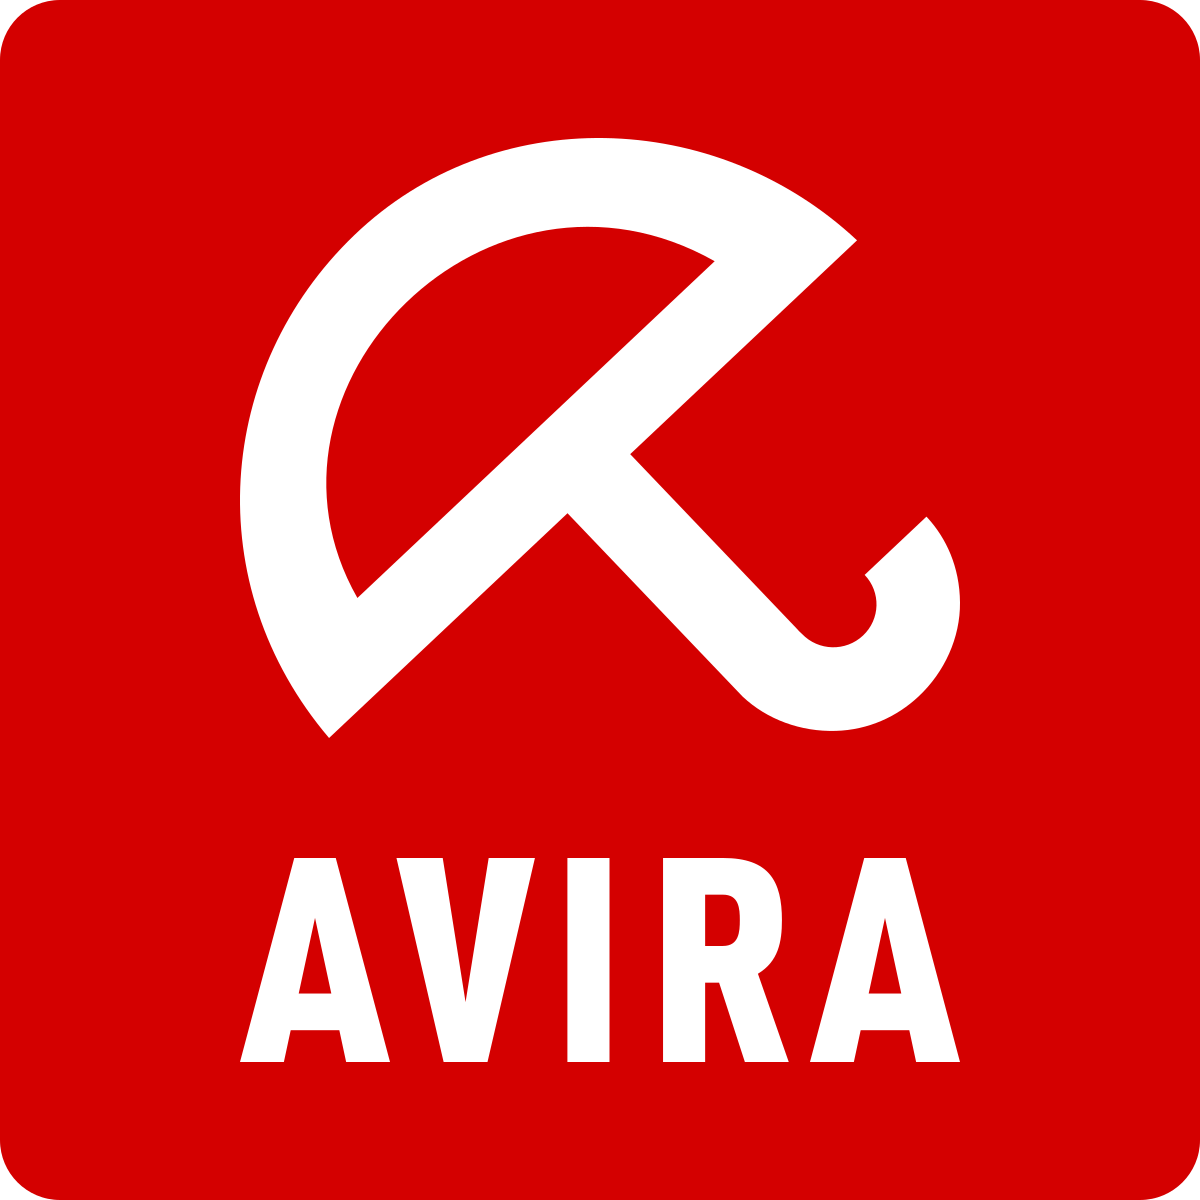 avira free full version antivirus download